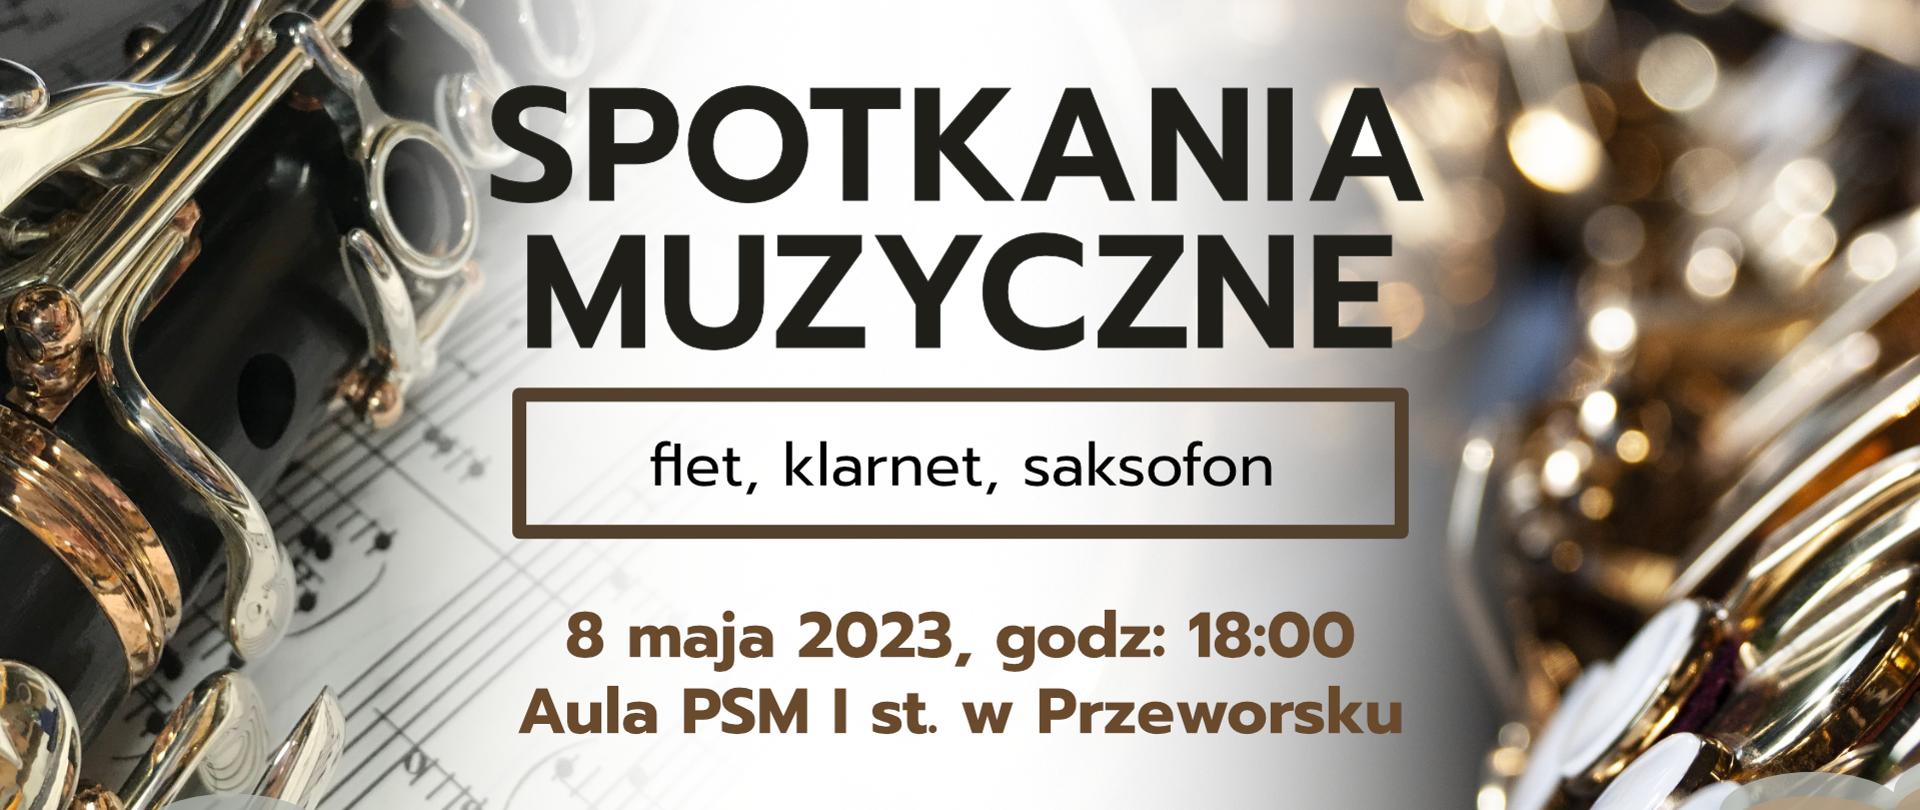 Baner informujący o spotkaniu muzycznym - flet, klarnet i saksofon w dniu 8 maja 2023 r. o godz. 18:00